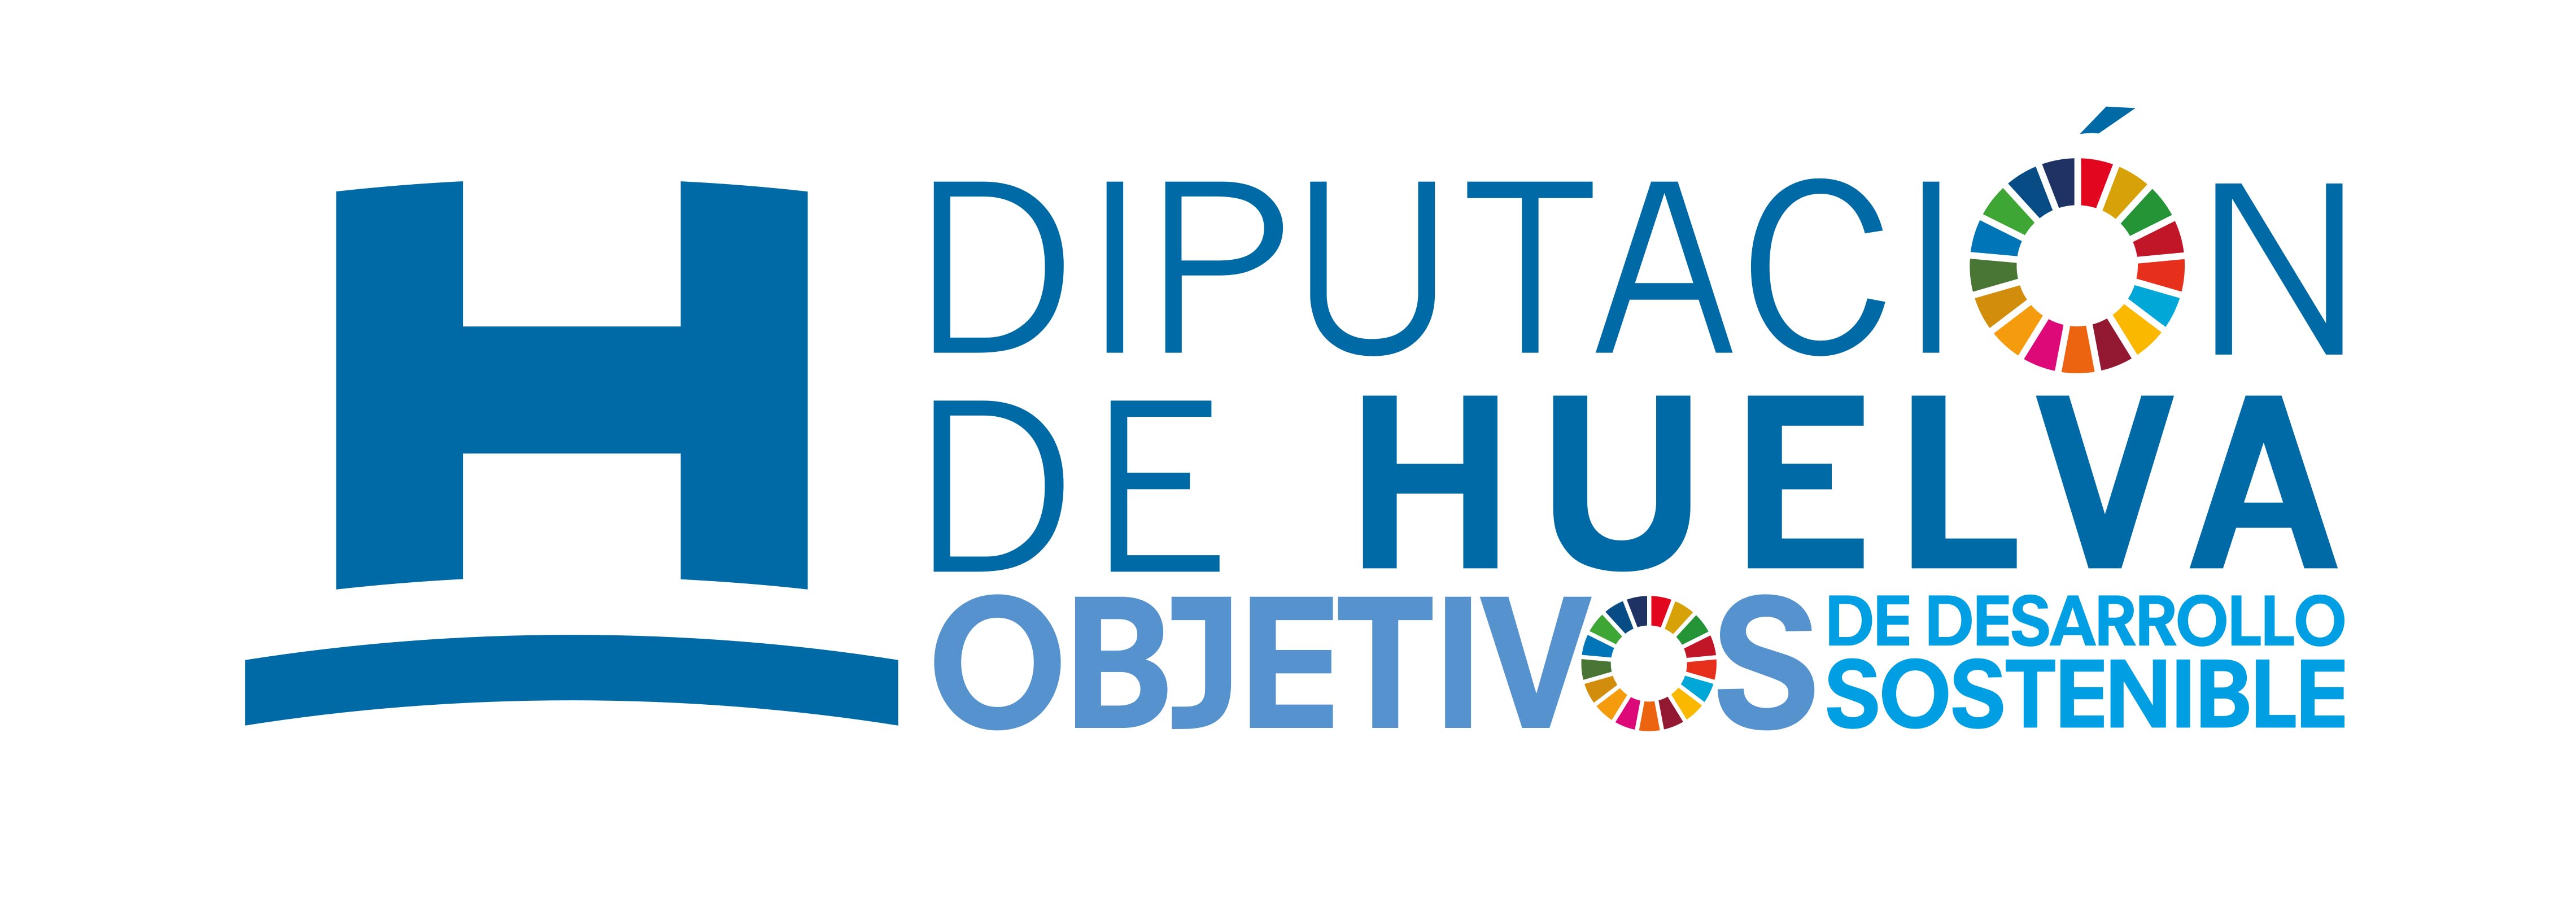 Logo Diputacion Huelva